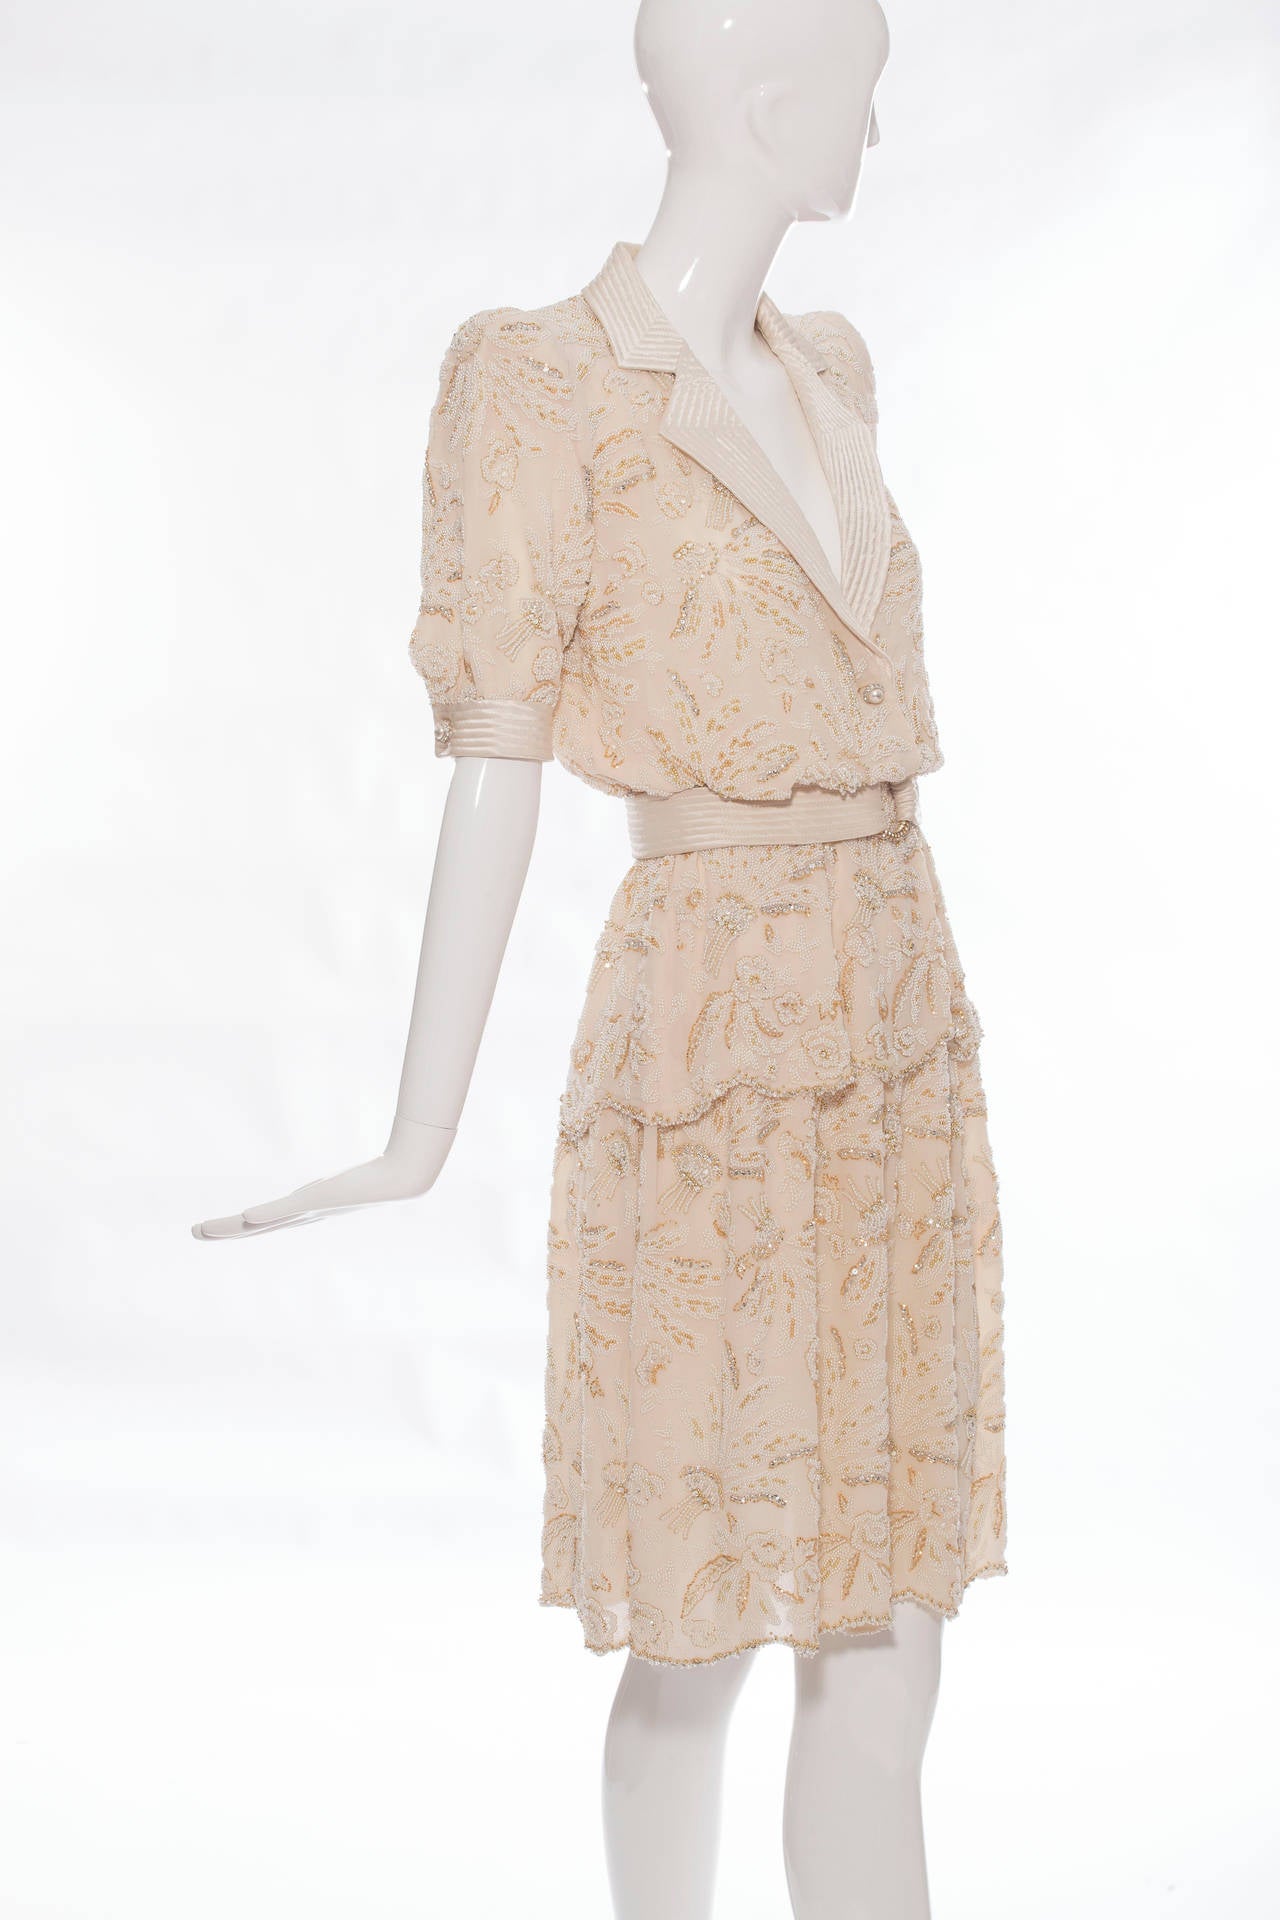 Valentino Haute Couture Cream Silk Chiffon Embroidered Skirt Suit, Circa 1980s Damen